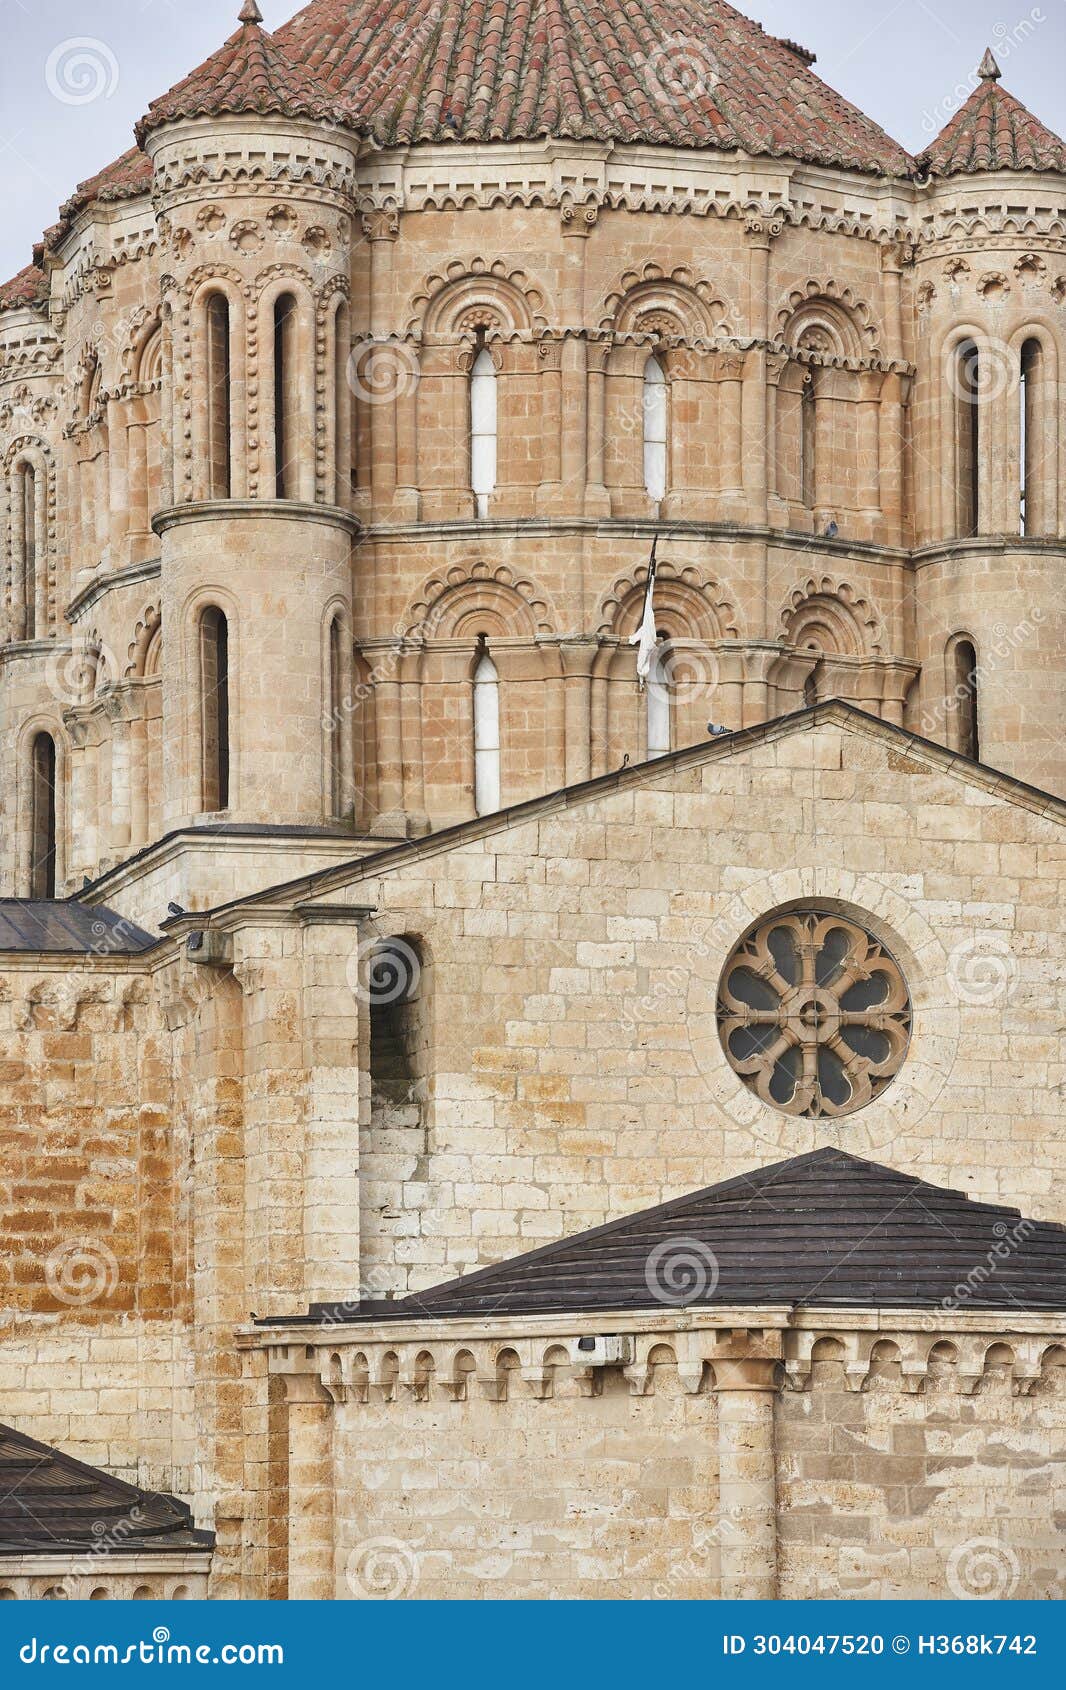 romanesque and gothic church. colegiata de toro. castilla leon, spain